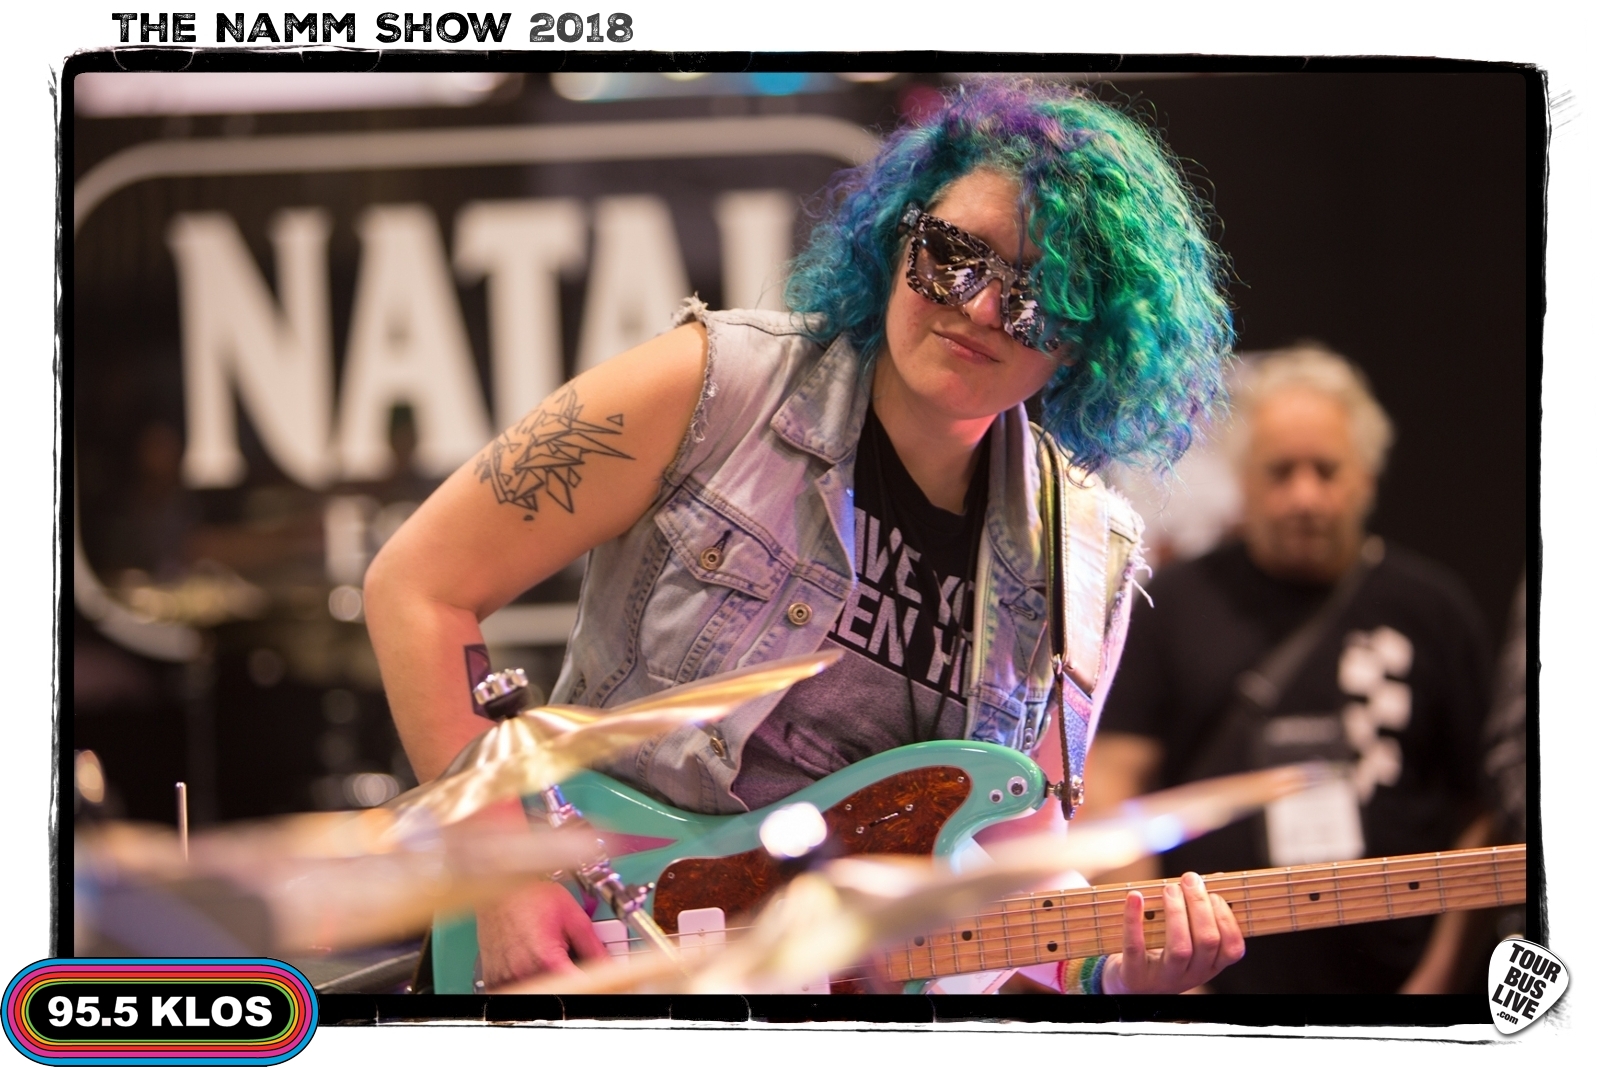 The NAMM Show, Anaheim Convention Center, CA., 1/26/18. © 2018 TourBusLive.com